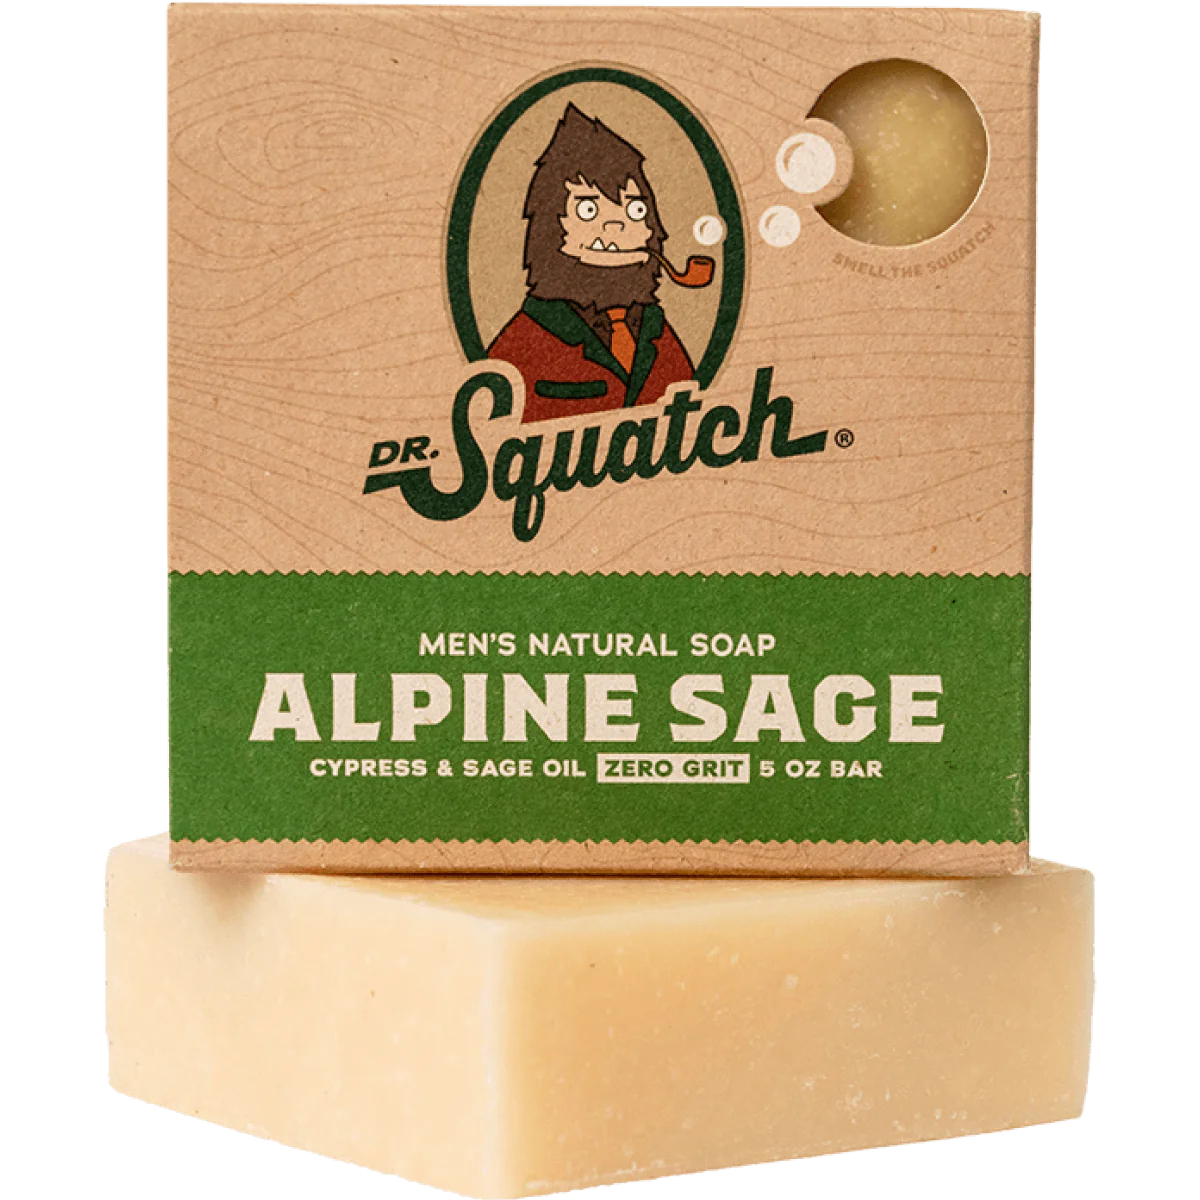 Men's Natural Soap - Alpine Sage